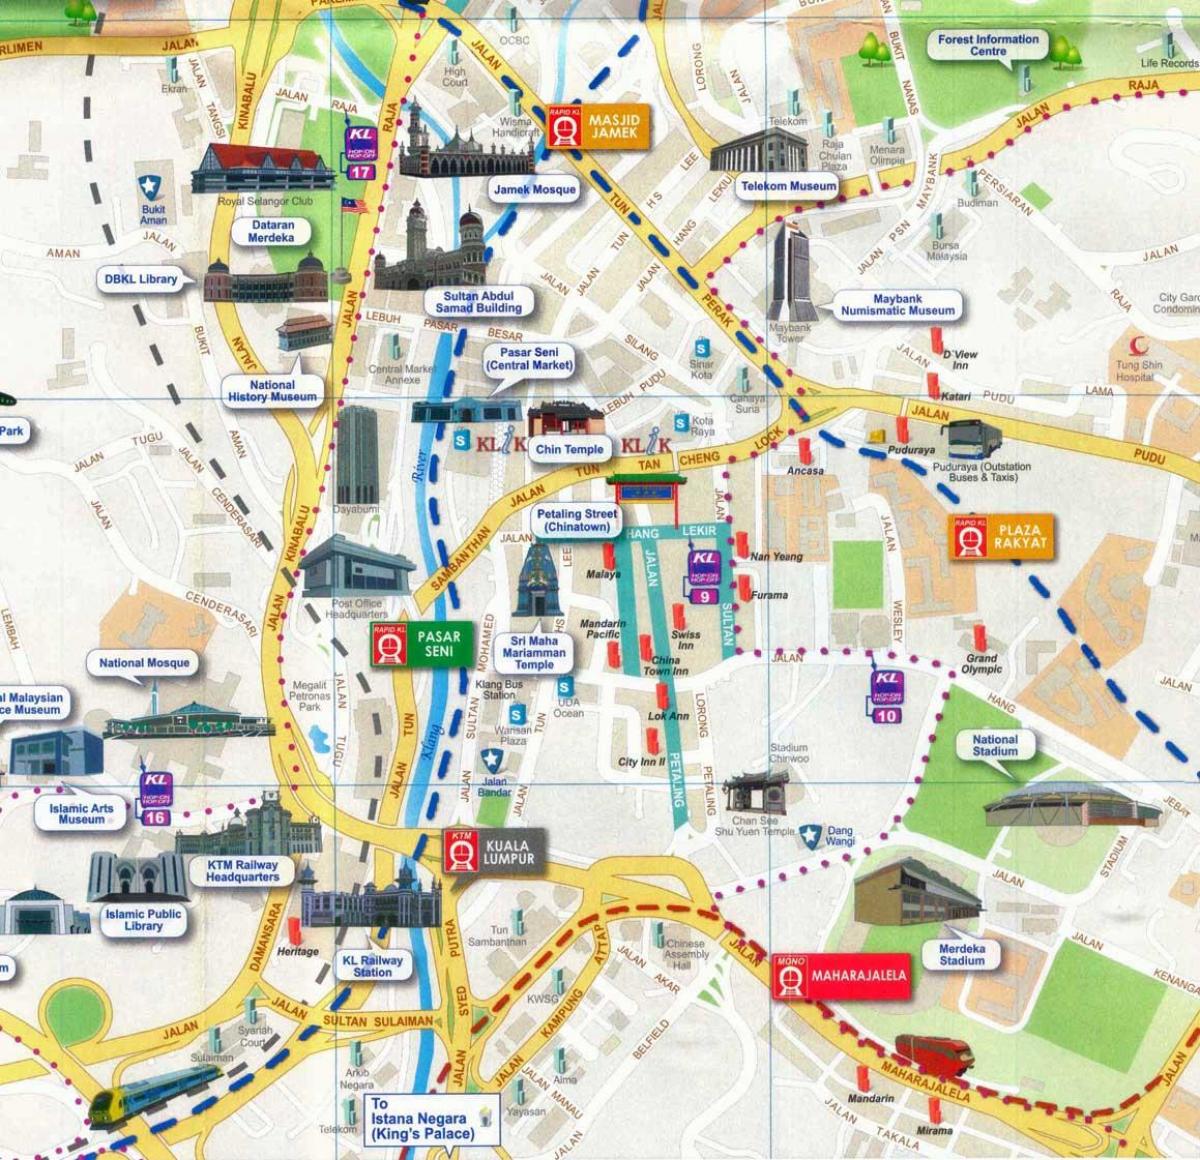 מפה של petaling street קואלה לומפור